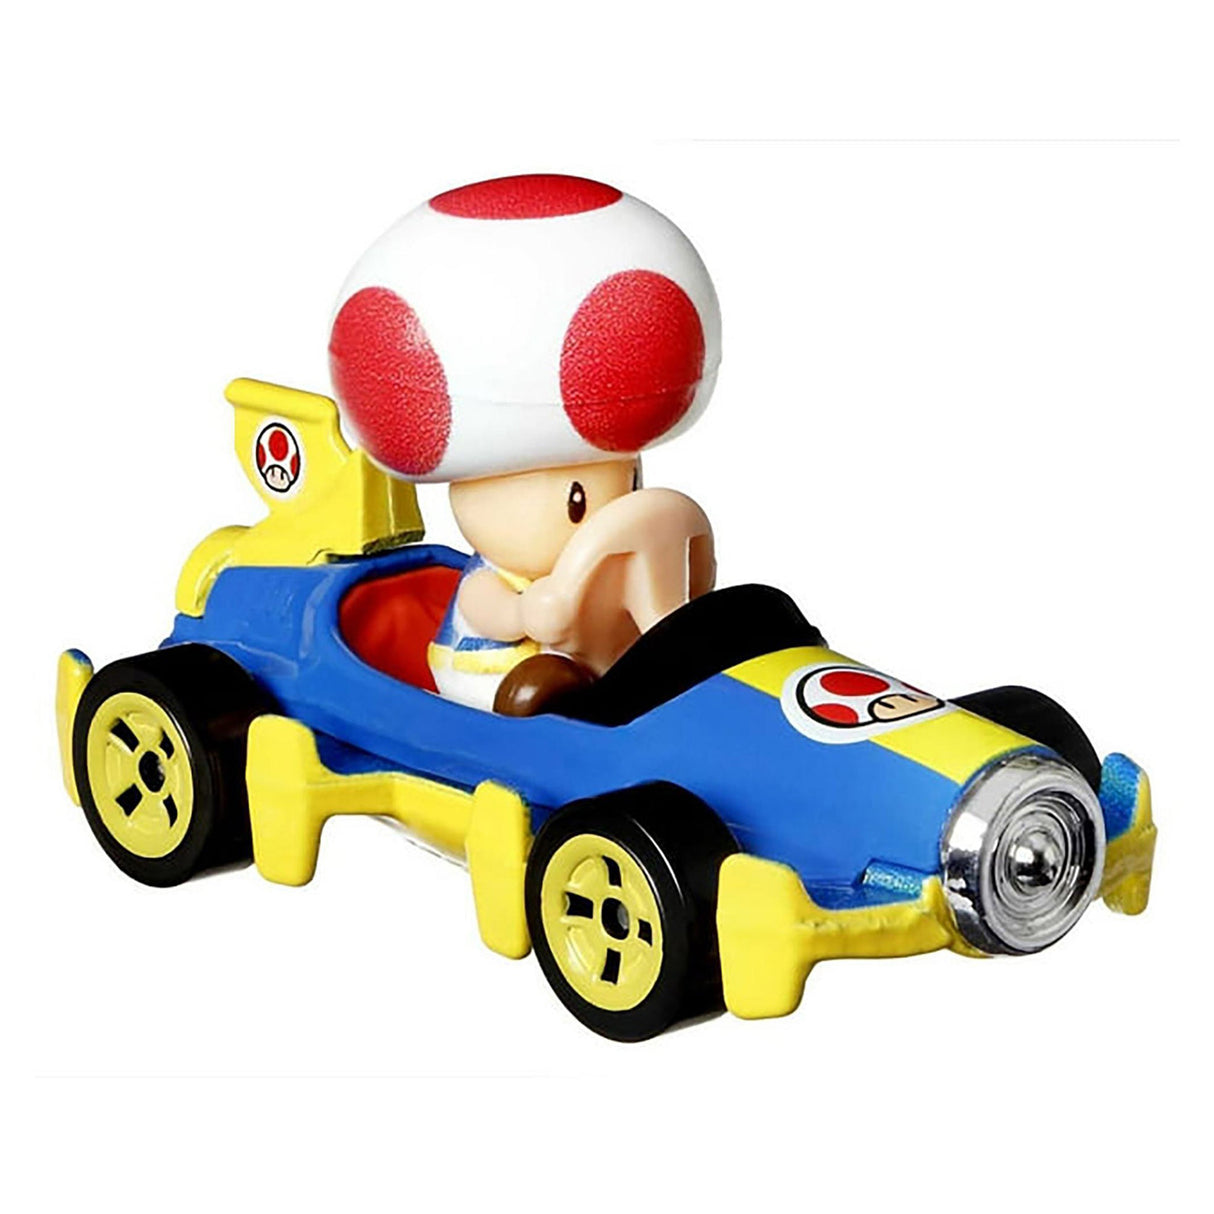 Hot Wheels Mariokart Toad Mach 8